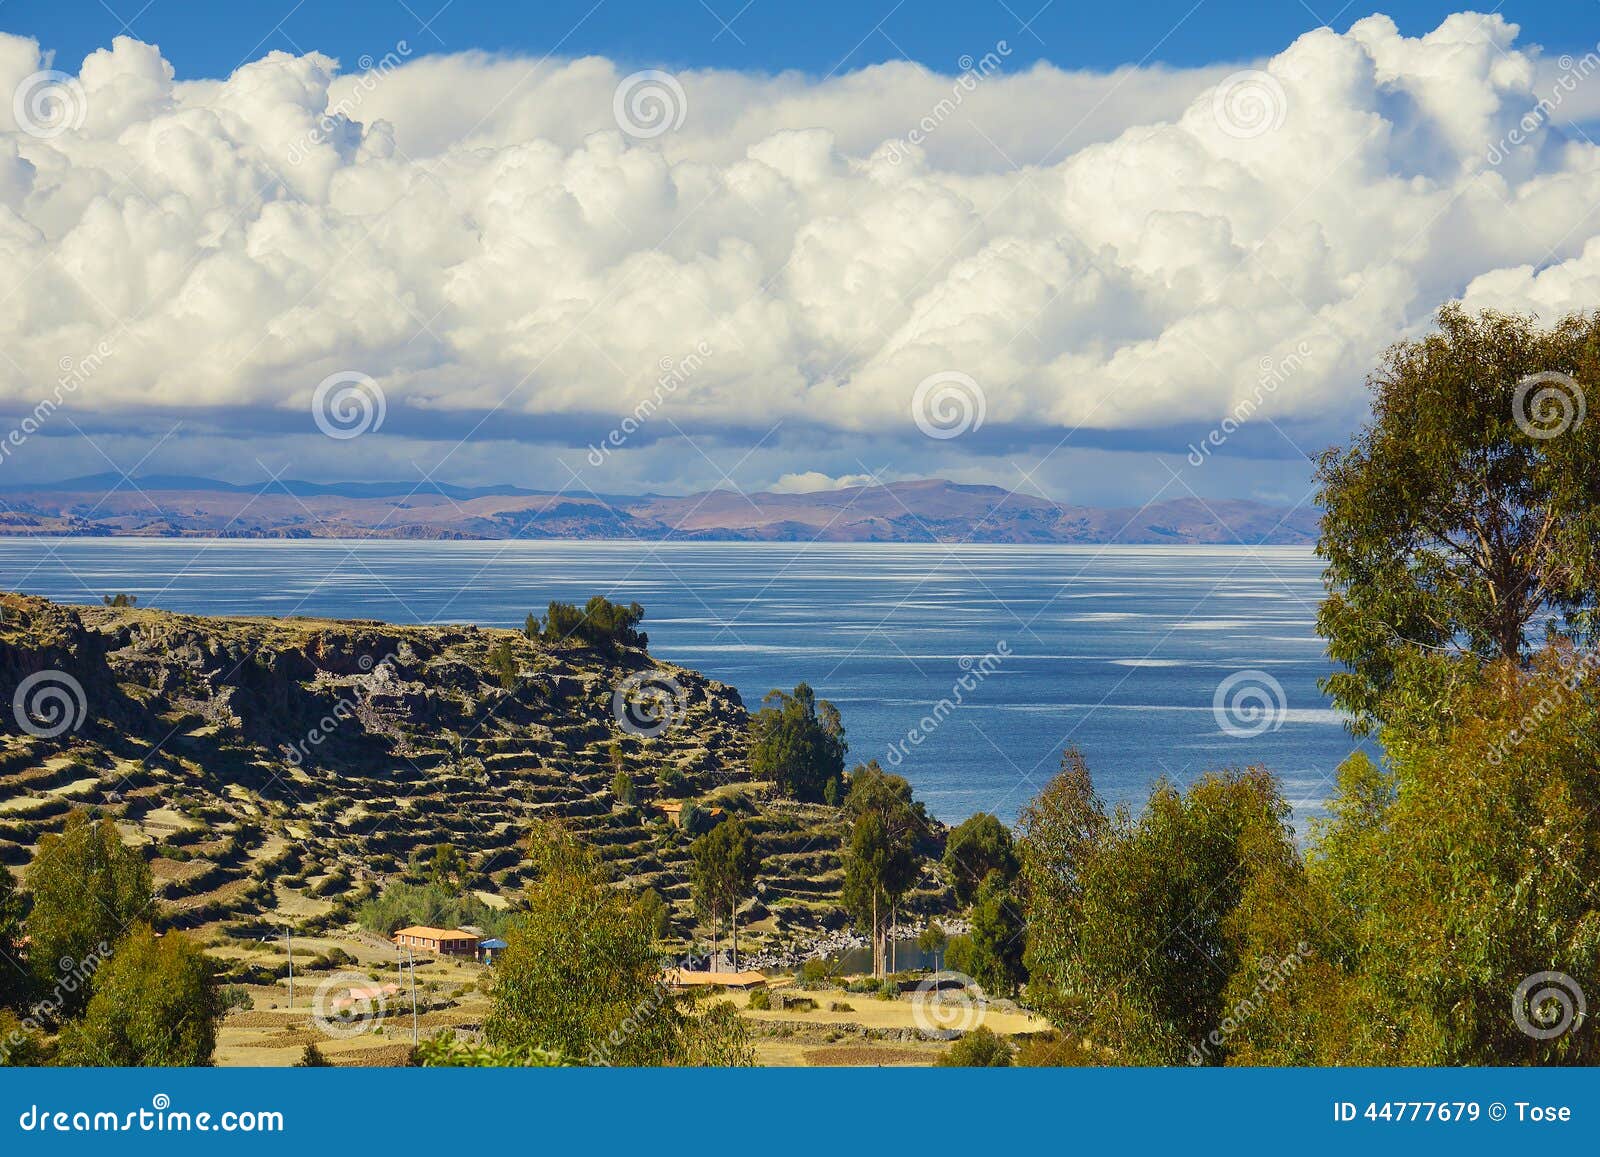 view of lake titicaca from amantani island, puno, peru